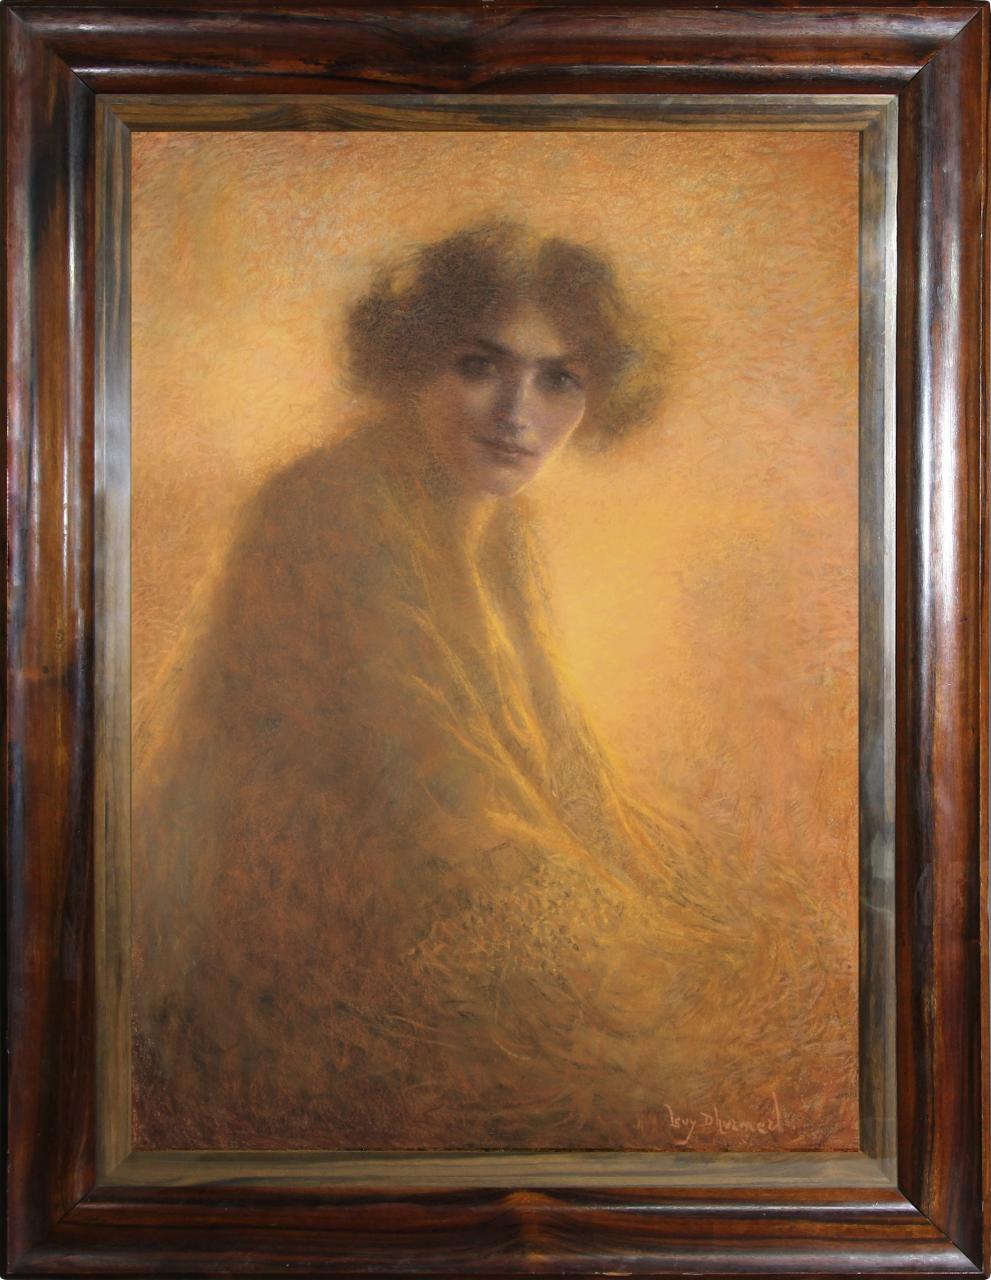 Lucien Levy Dhurmer,La Bienveillante,1917